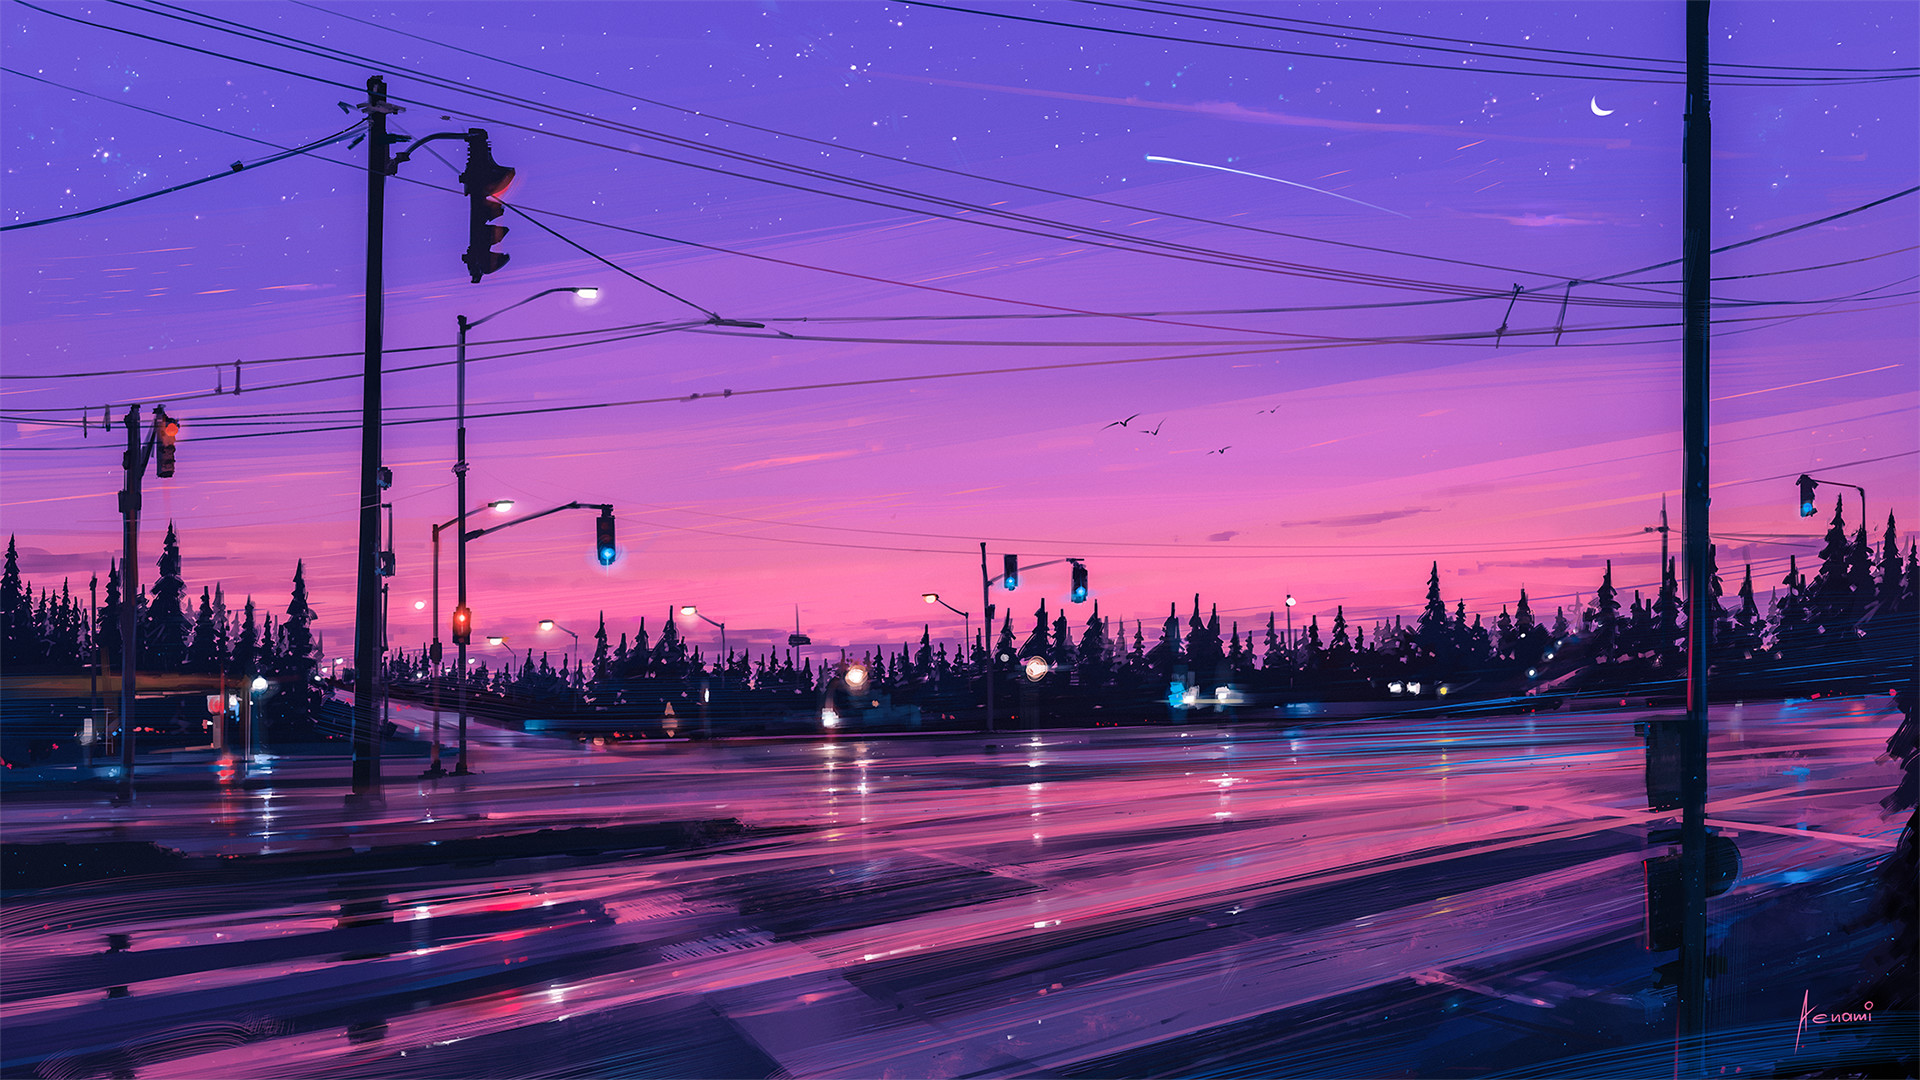 Wallpaper Traffic signals, road, night, illustration, art